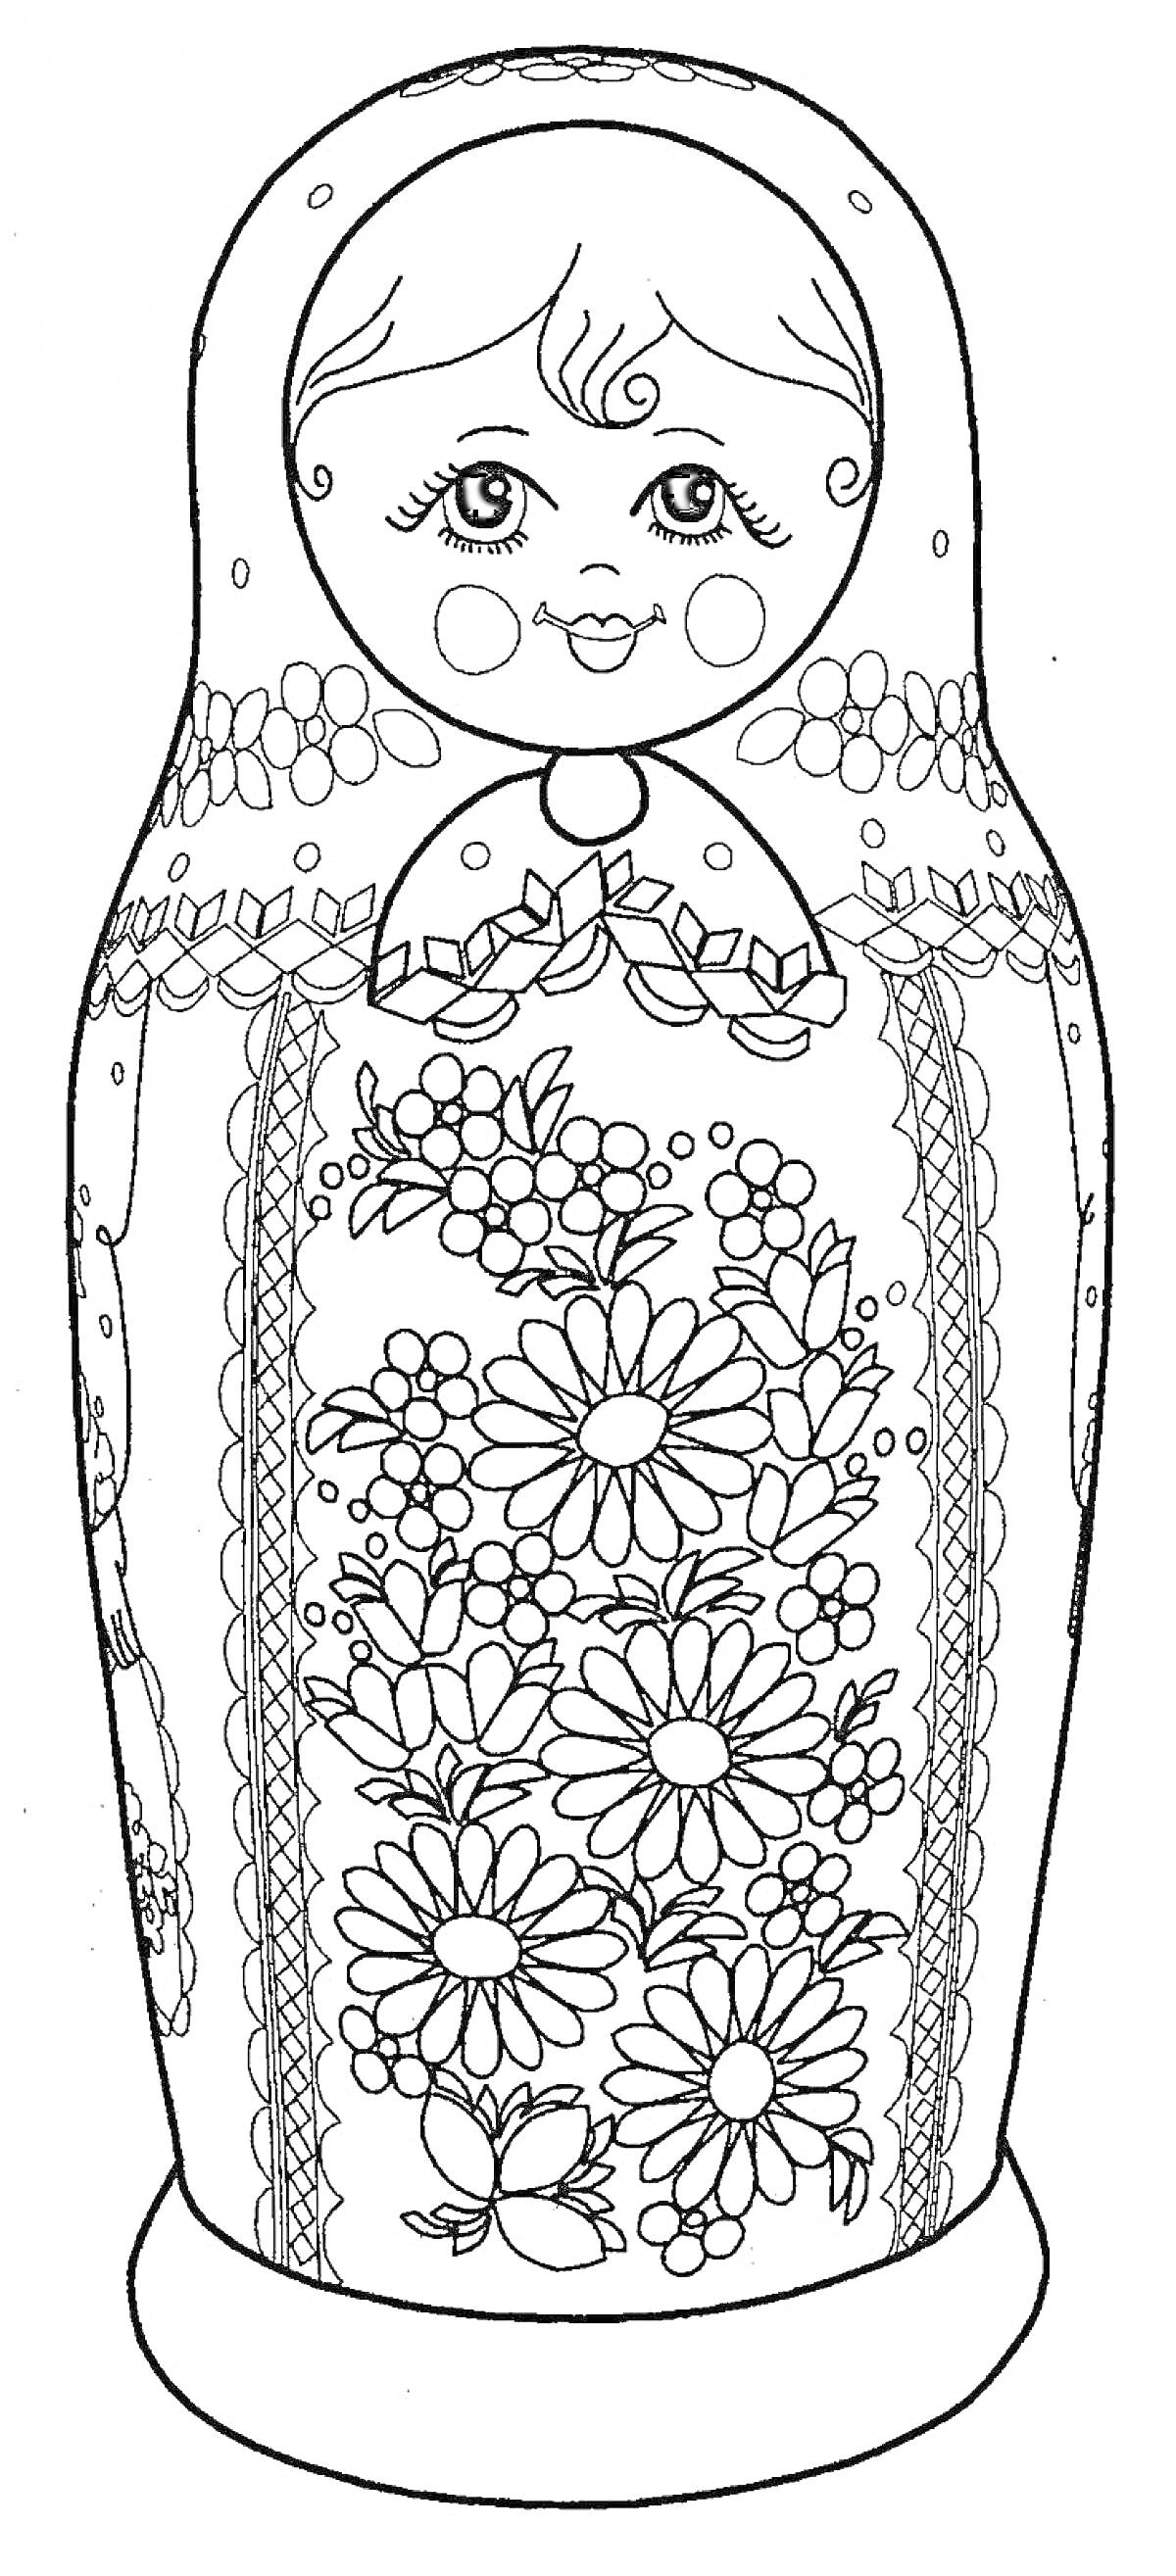 Раскраска Матрешка с цветами и узорами